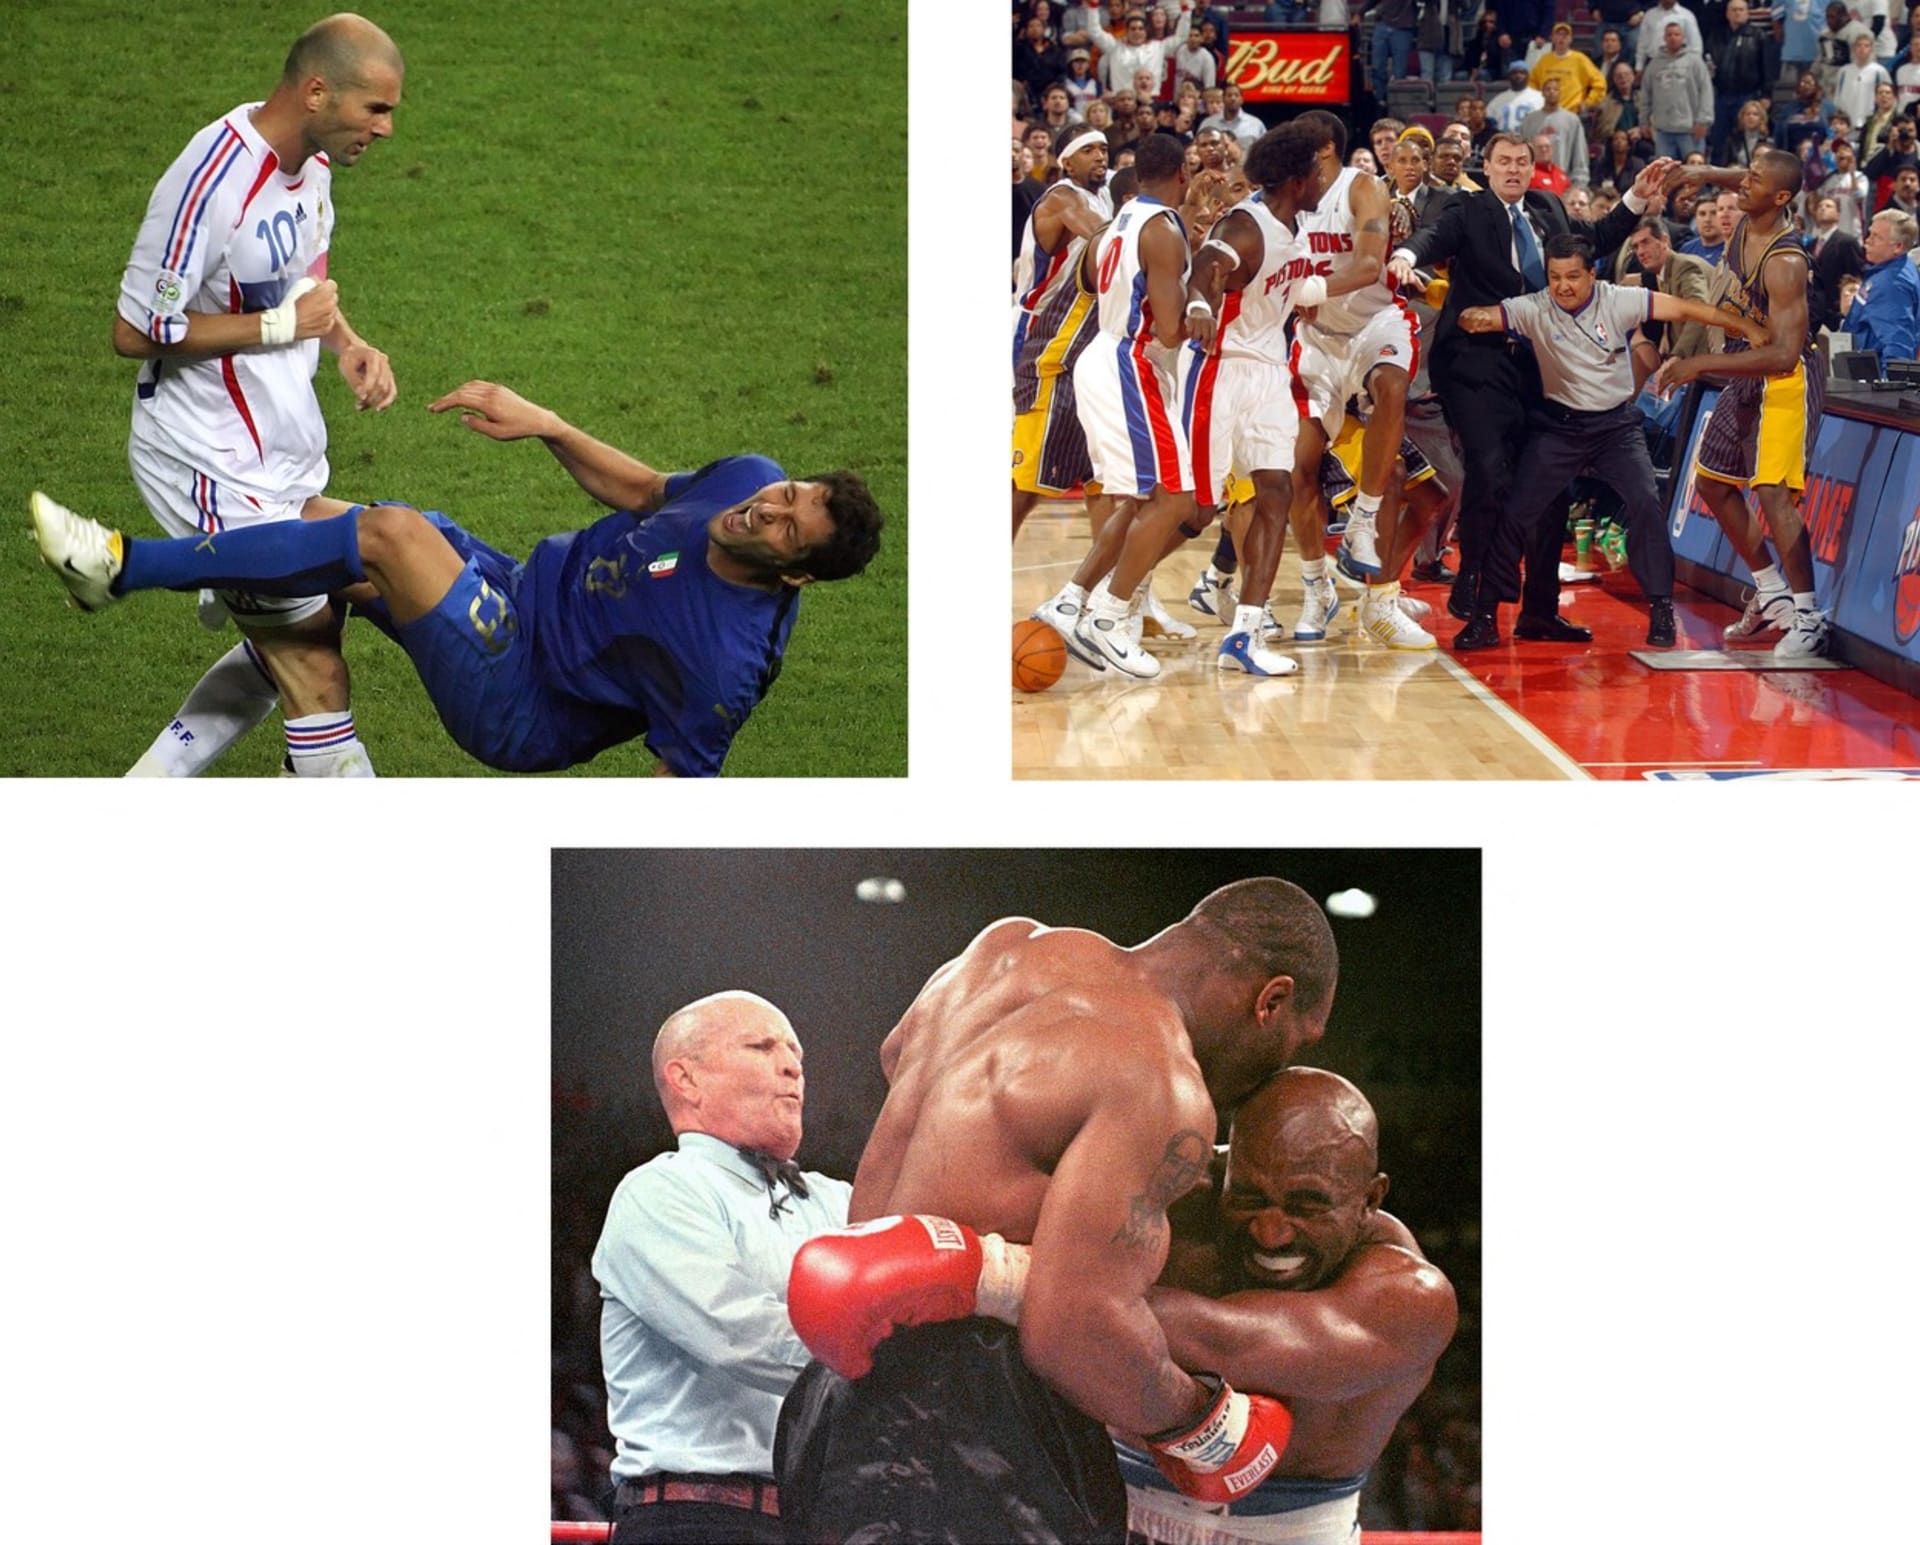 Ikonické sportovní excesy: Zidanova hlavička do Matterazziho, potyčka mezi hráči NBA v roce 2004 a pokus boxera Tysona o ukousnutí Holyfieldova ucha